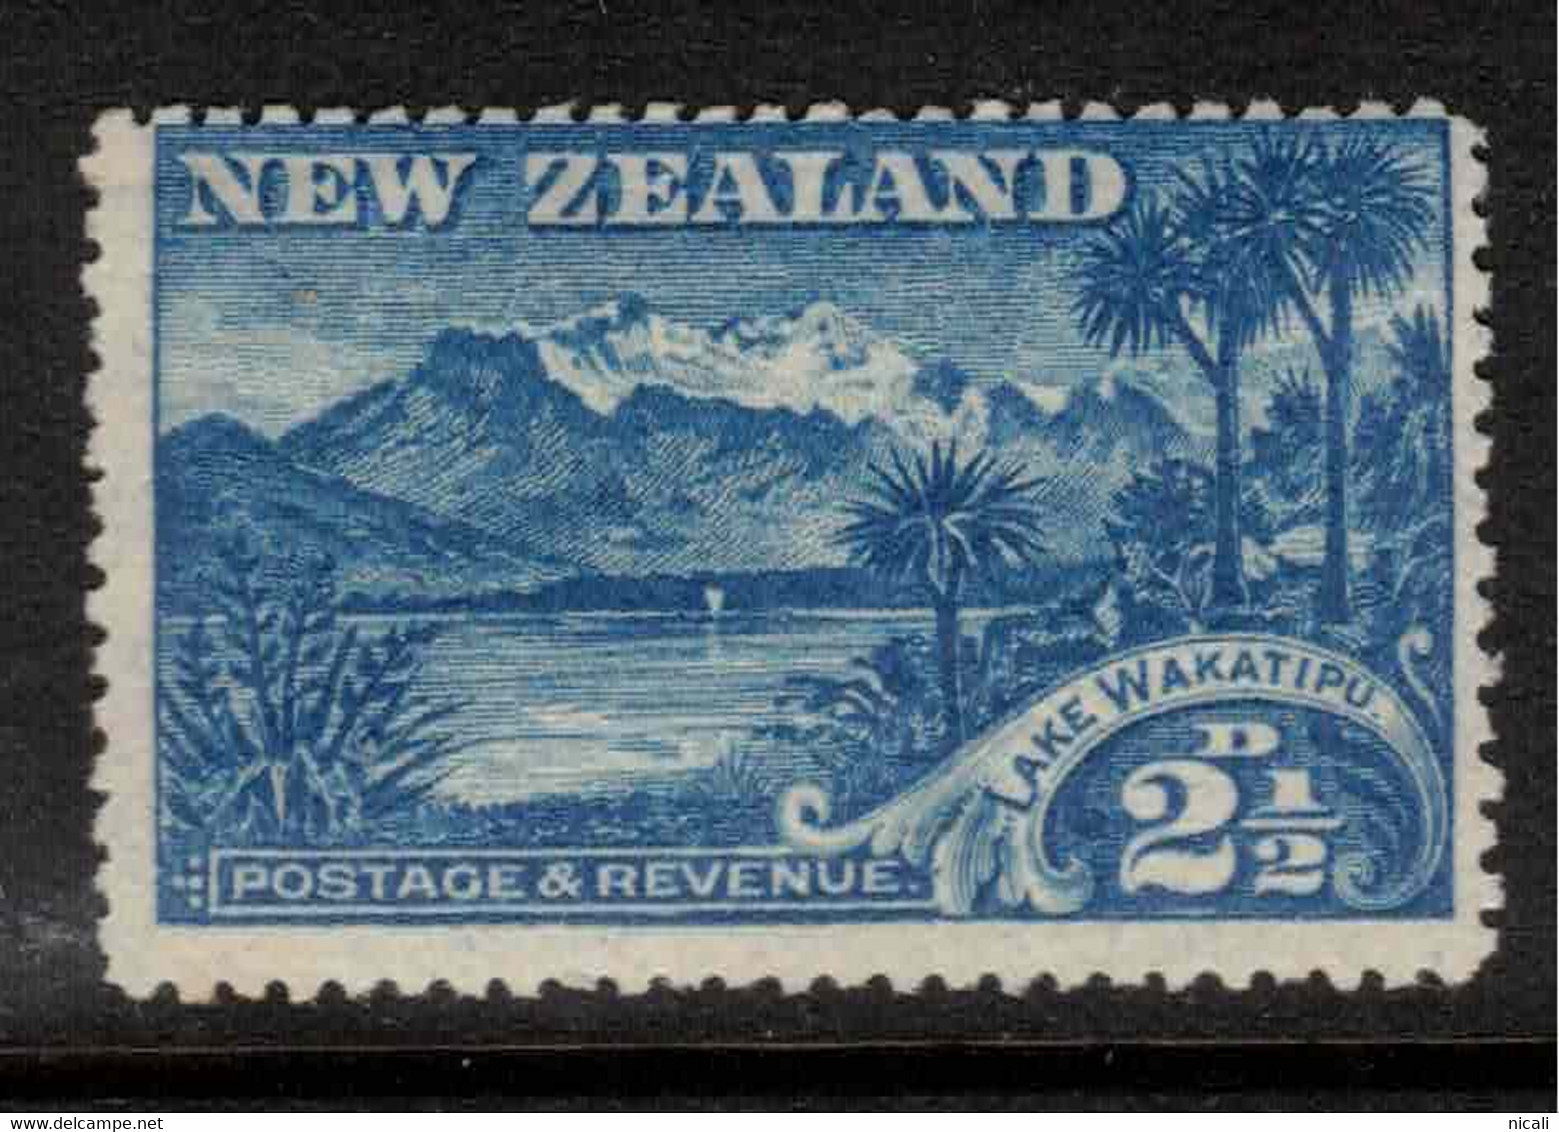 NZ 1898 2 1/2d Blue Lake Wakitipu SG 320 UNHM #AIP10 - Ongebruikt